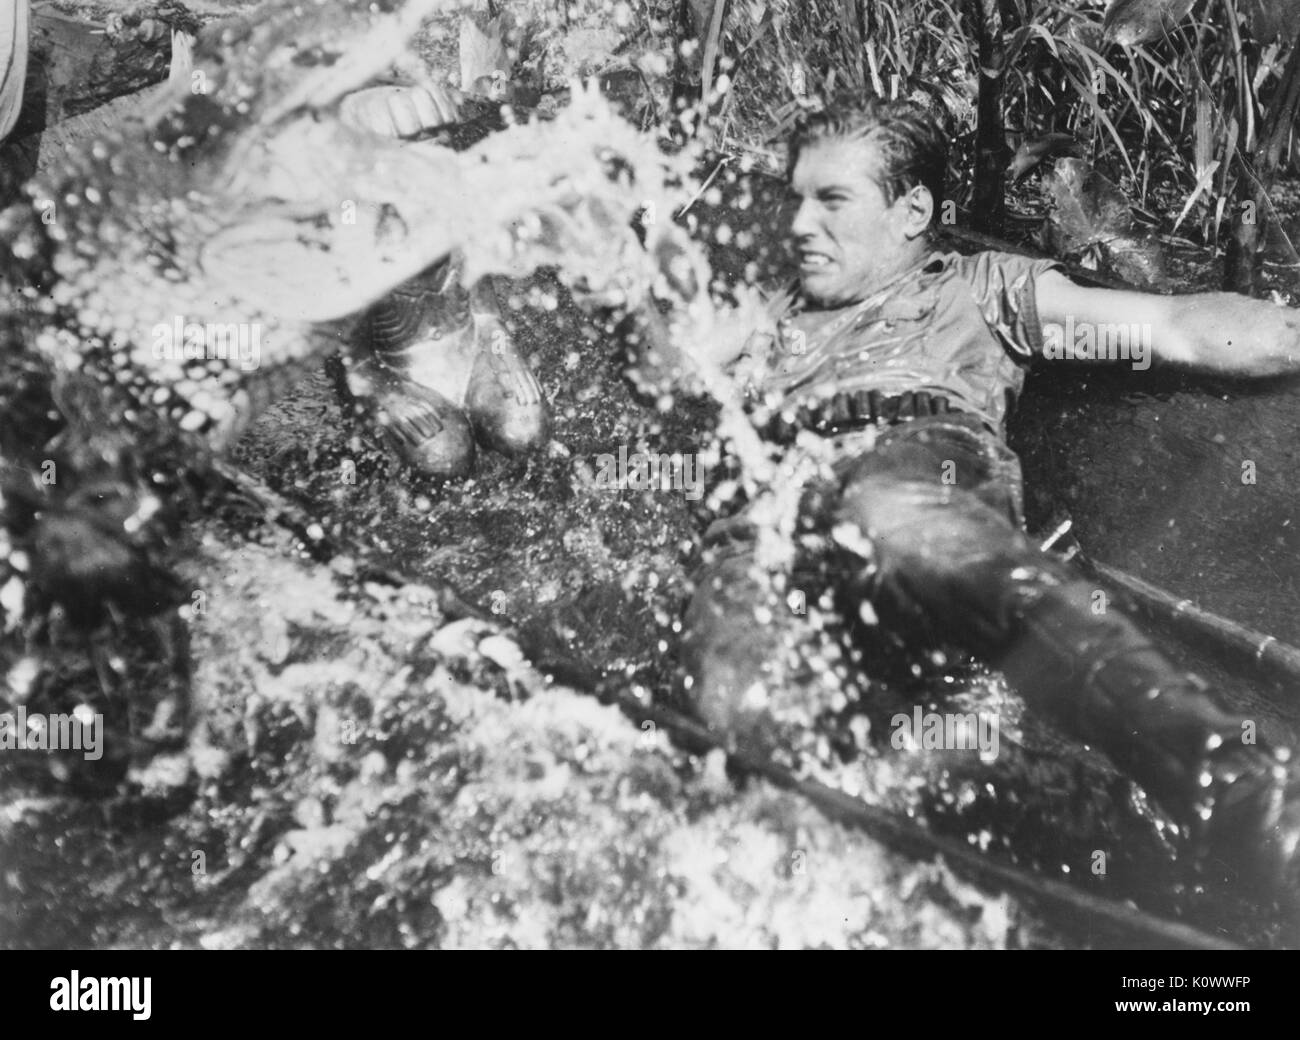 Filmstill eines unbekannten Schauspielers, der in einem Gewässer kämpft, aus dem Film Stranger on the Prowl, 1952. Stockfoto